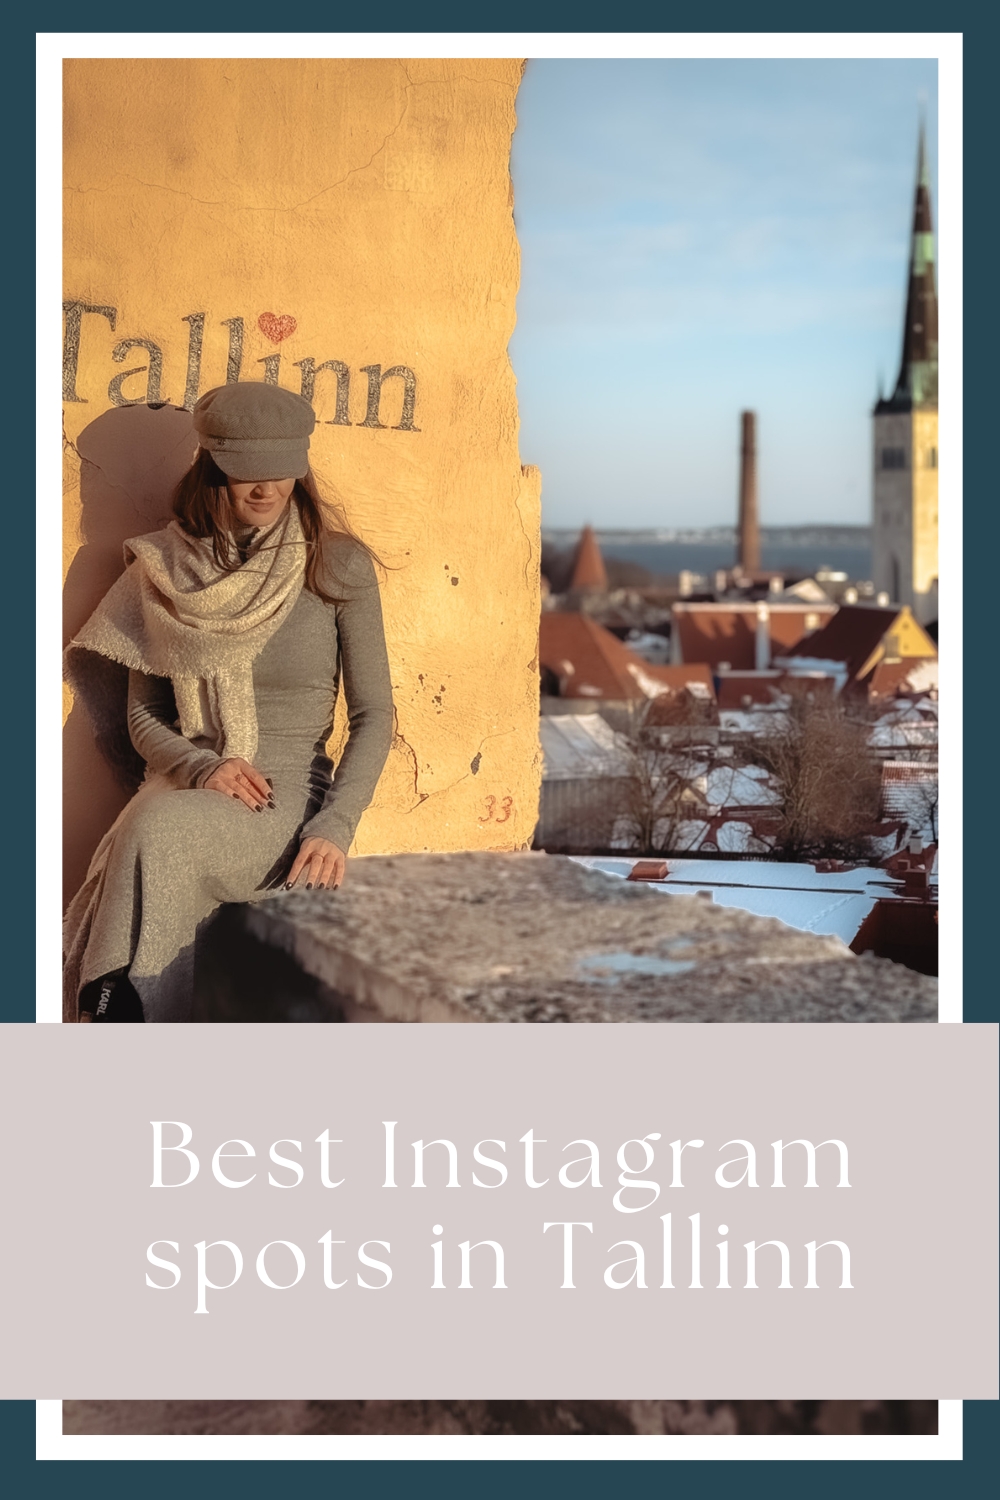 Best Instagram spots in Tallinn by My Next Pin